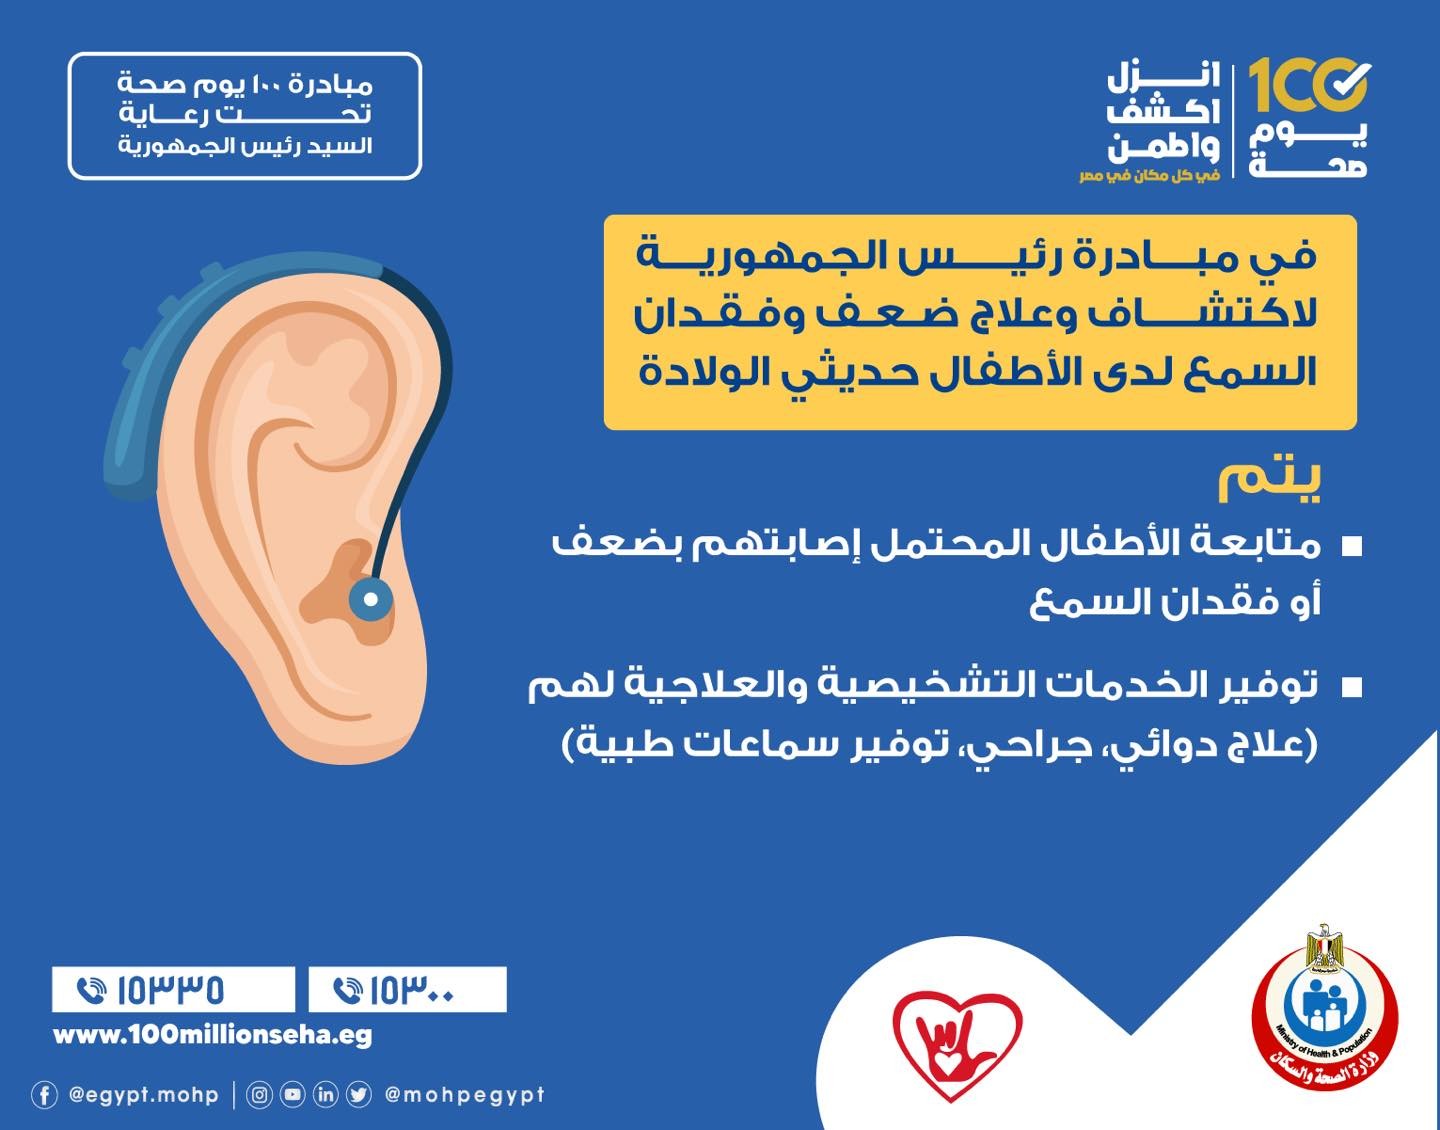 مبادرة رئيس الجمهورية لاكتشاف وعلاج ضعف وفقدان السمع لدى الأطفال حديثي الولادة